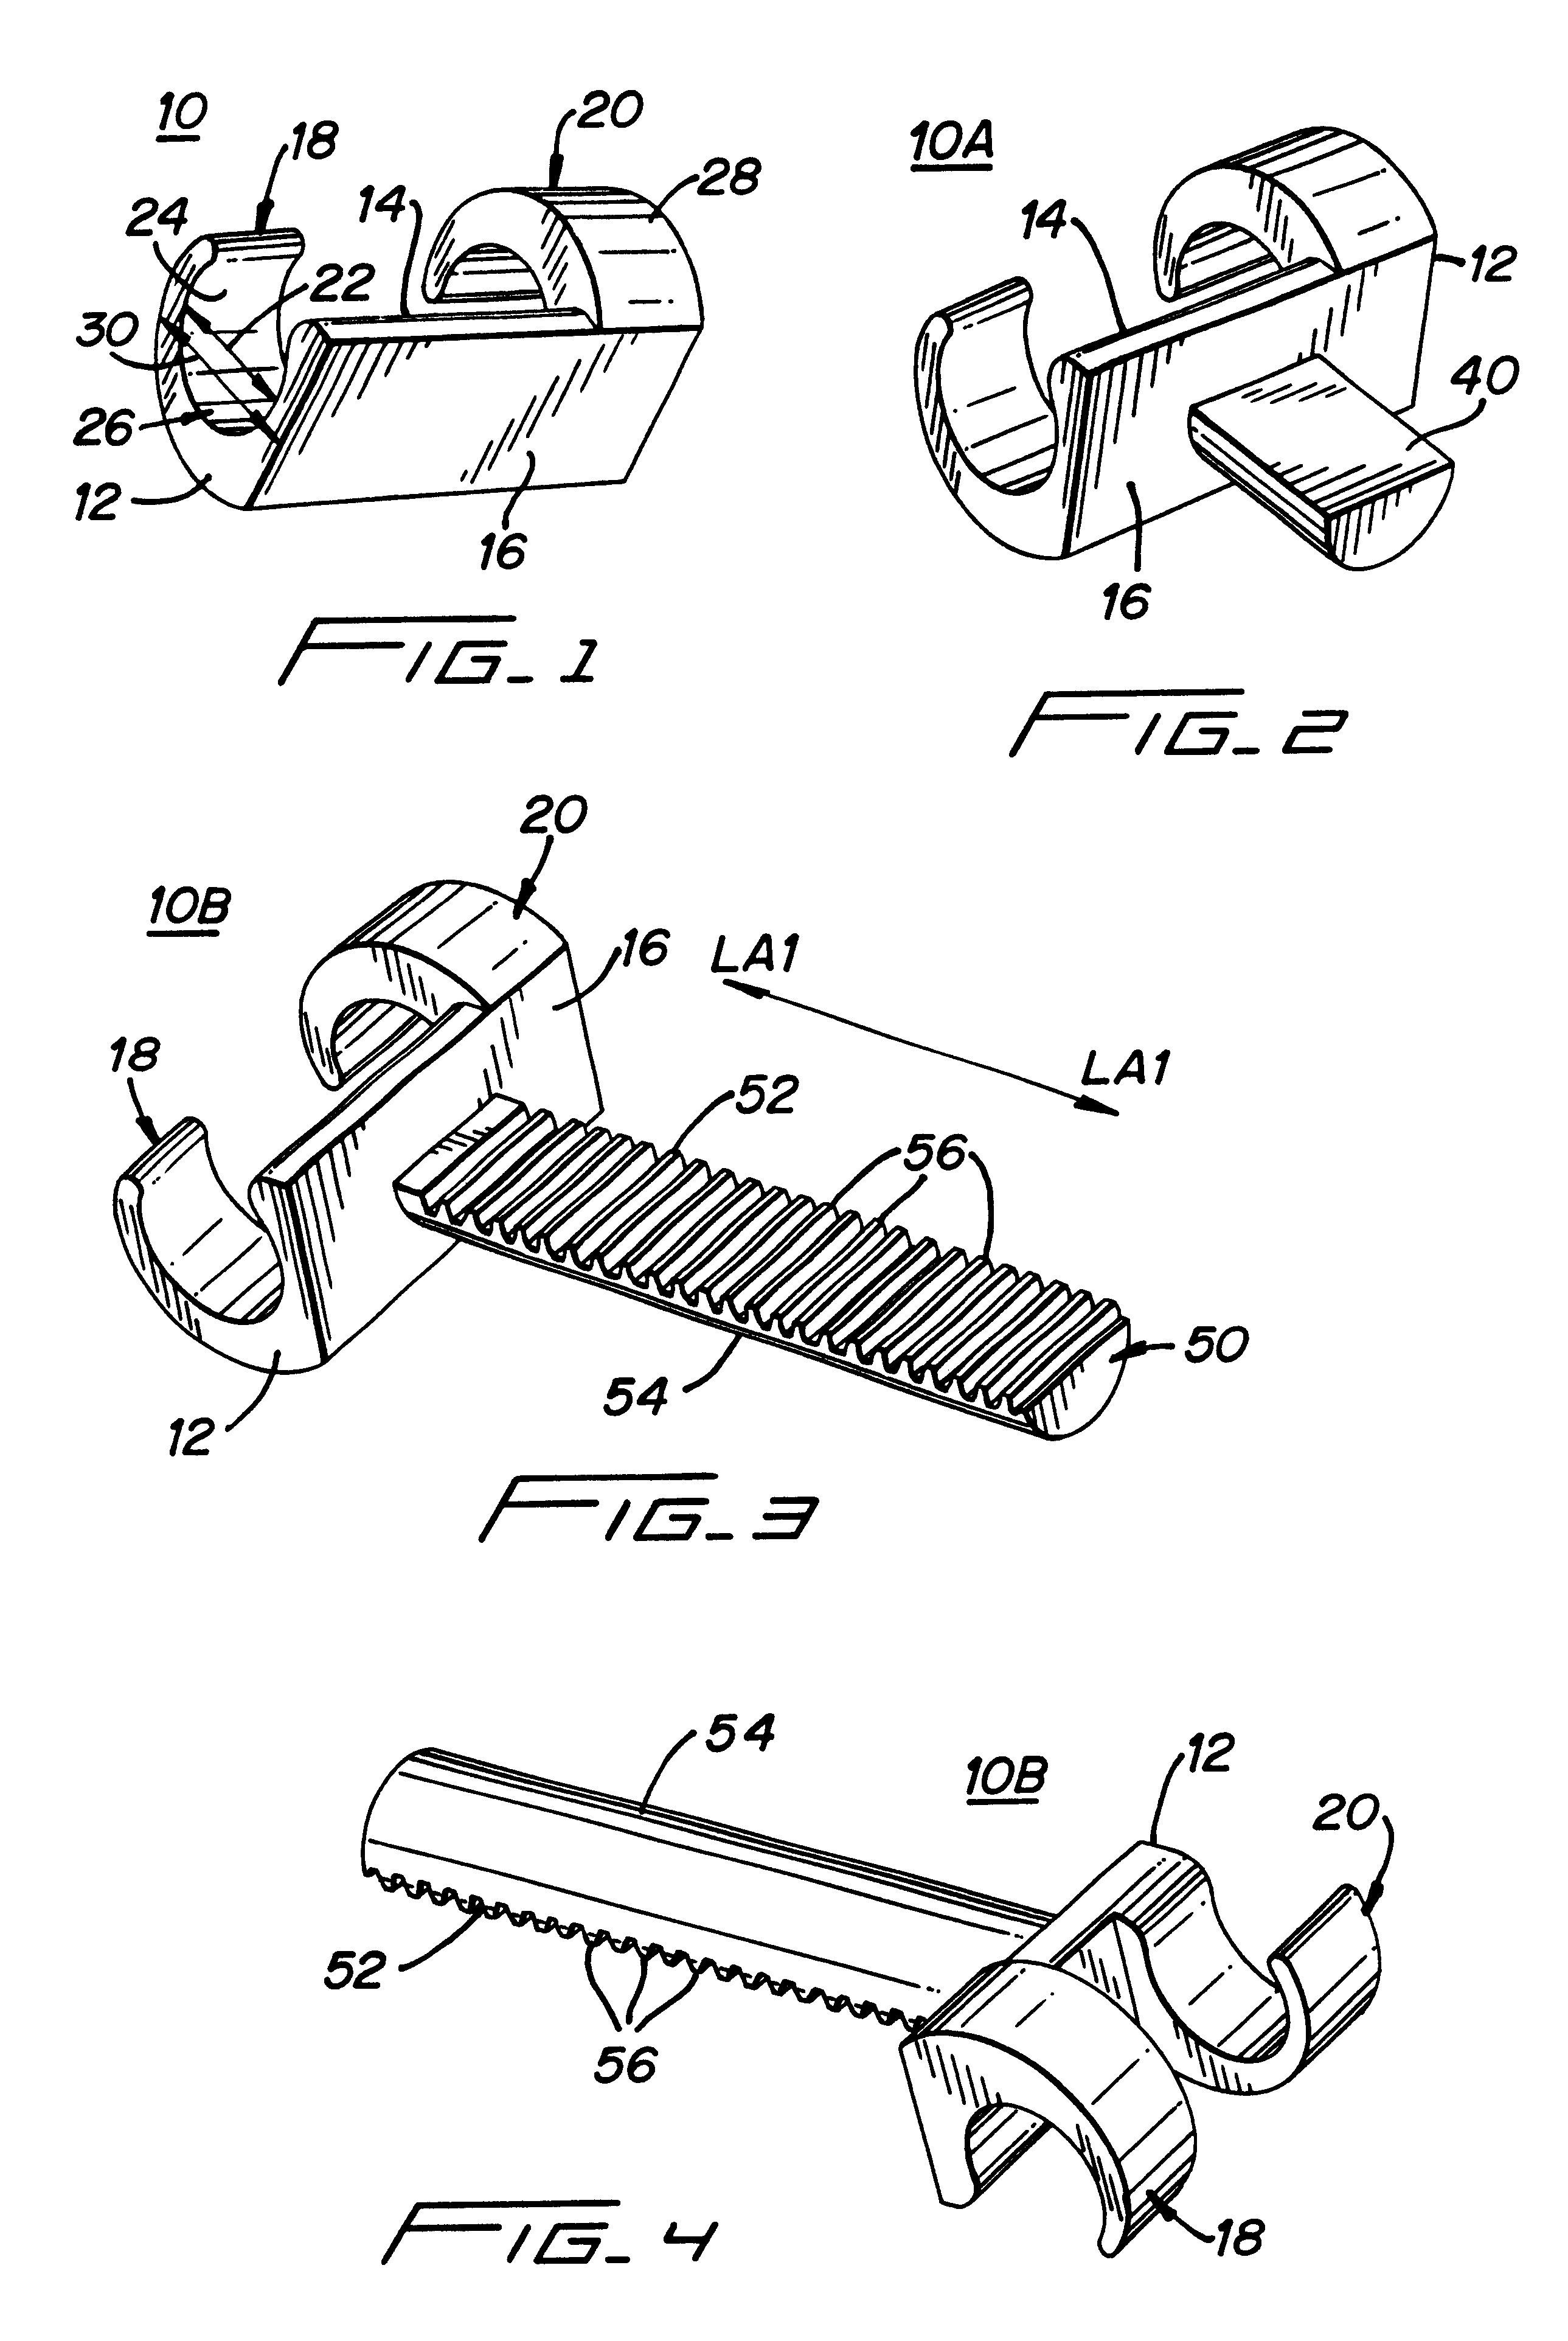 Transverse rod connector clip